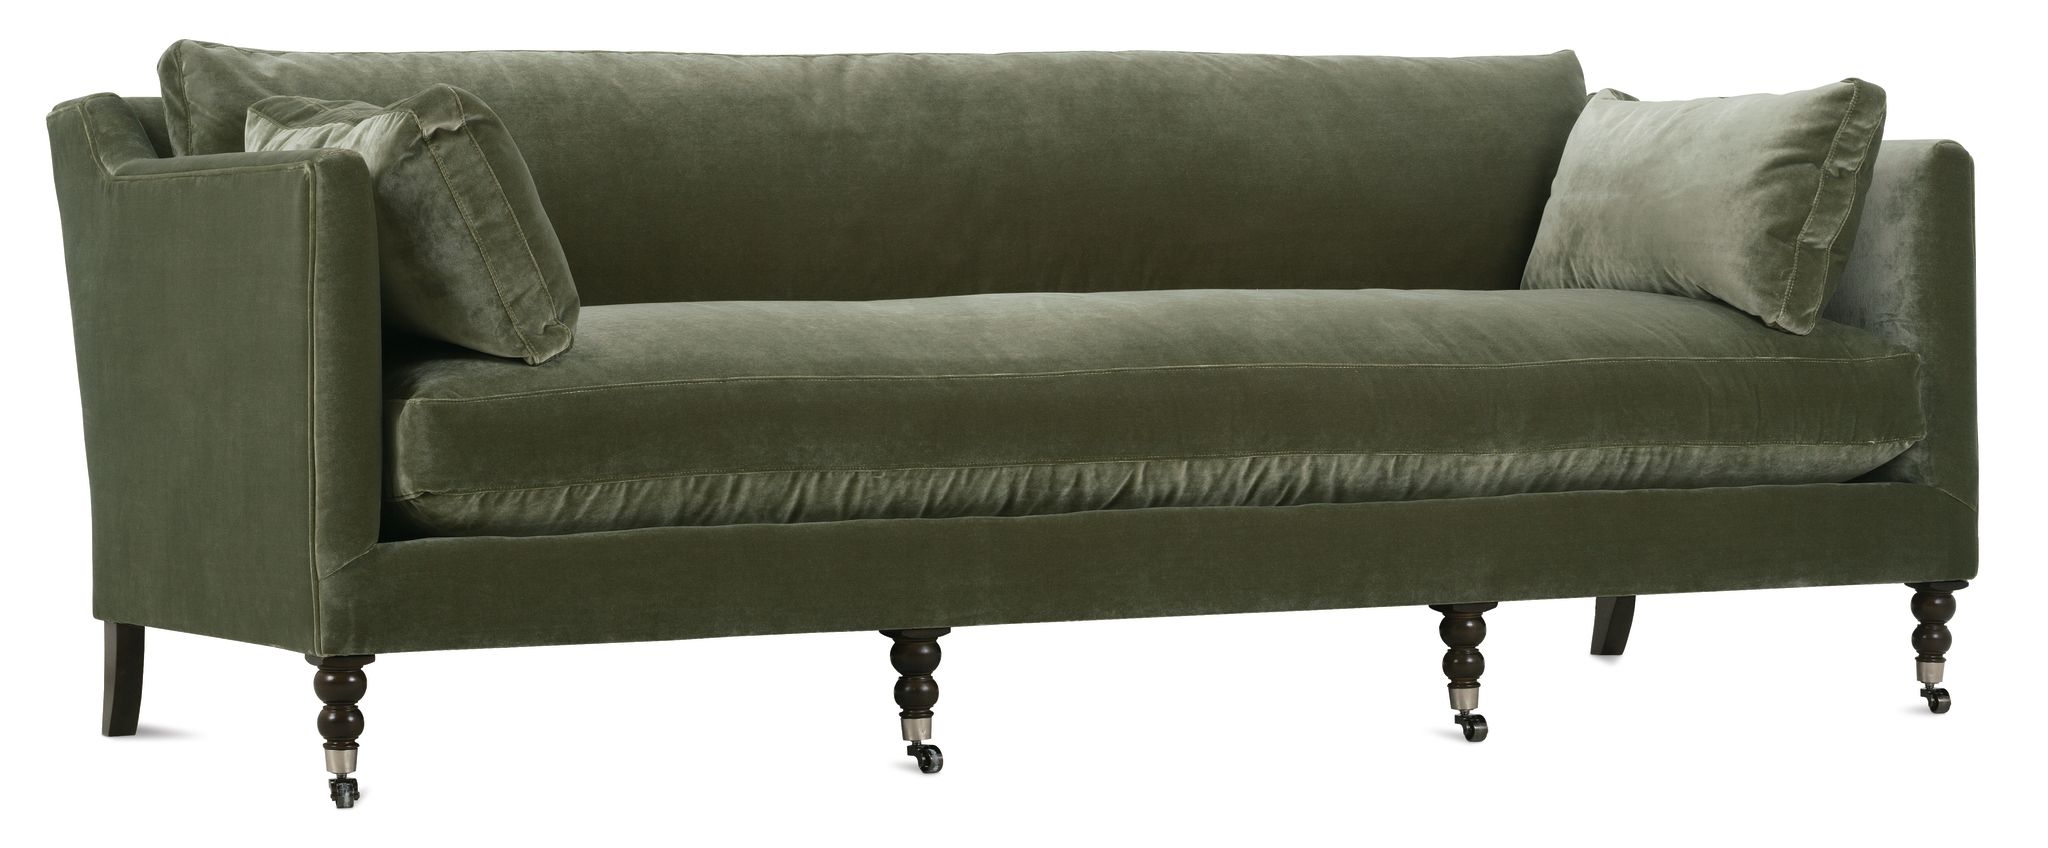 90” Madeline Sofa - Antiqued Moss Velvet - Image 1